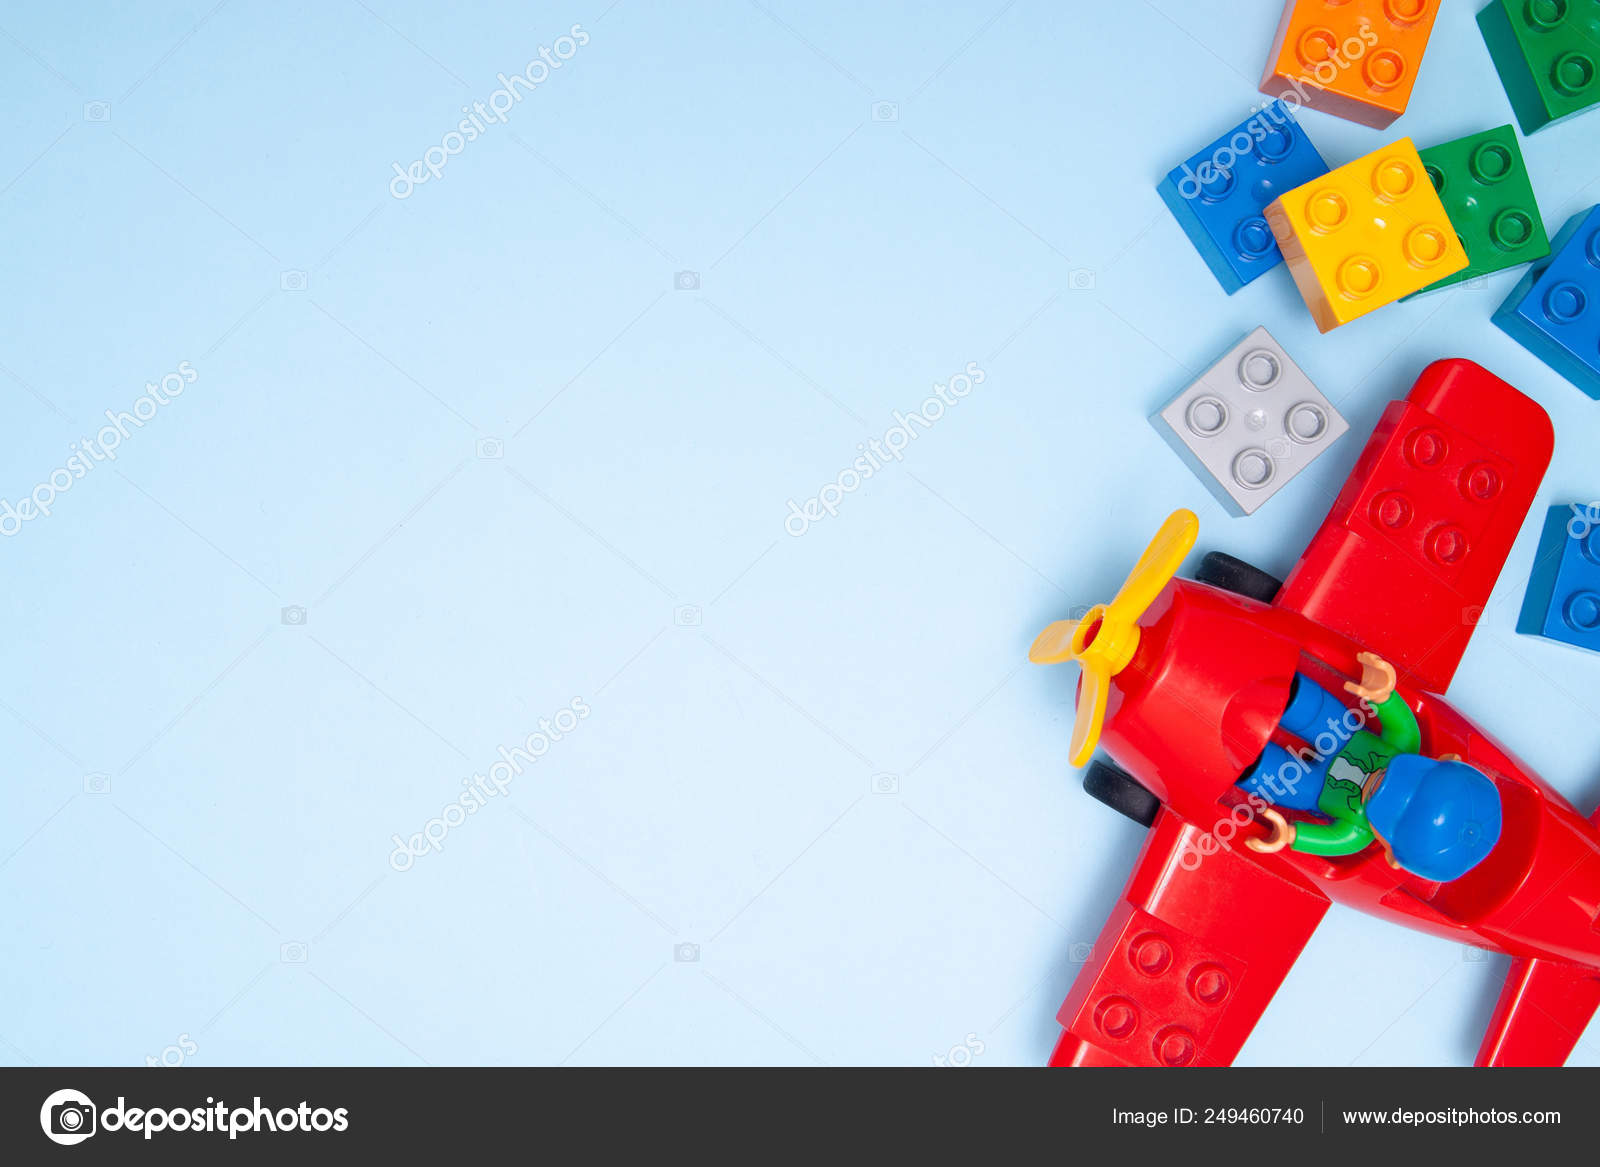 kids toy bricks